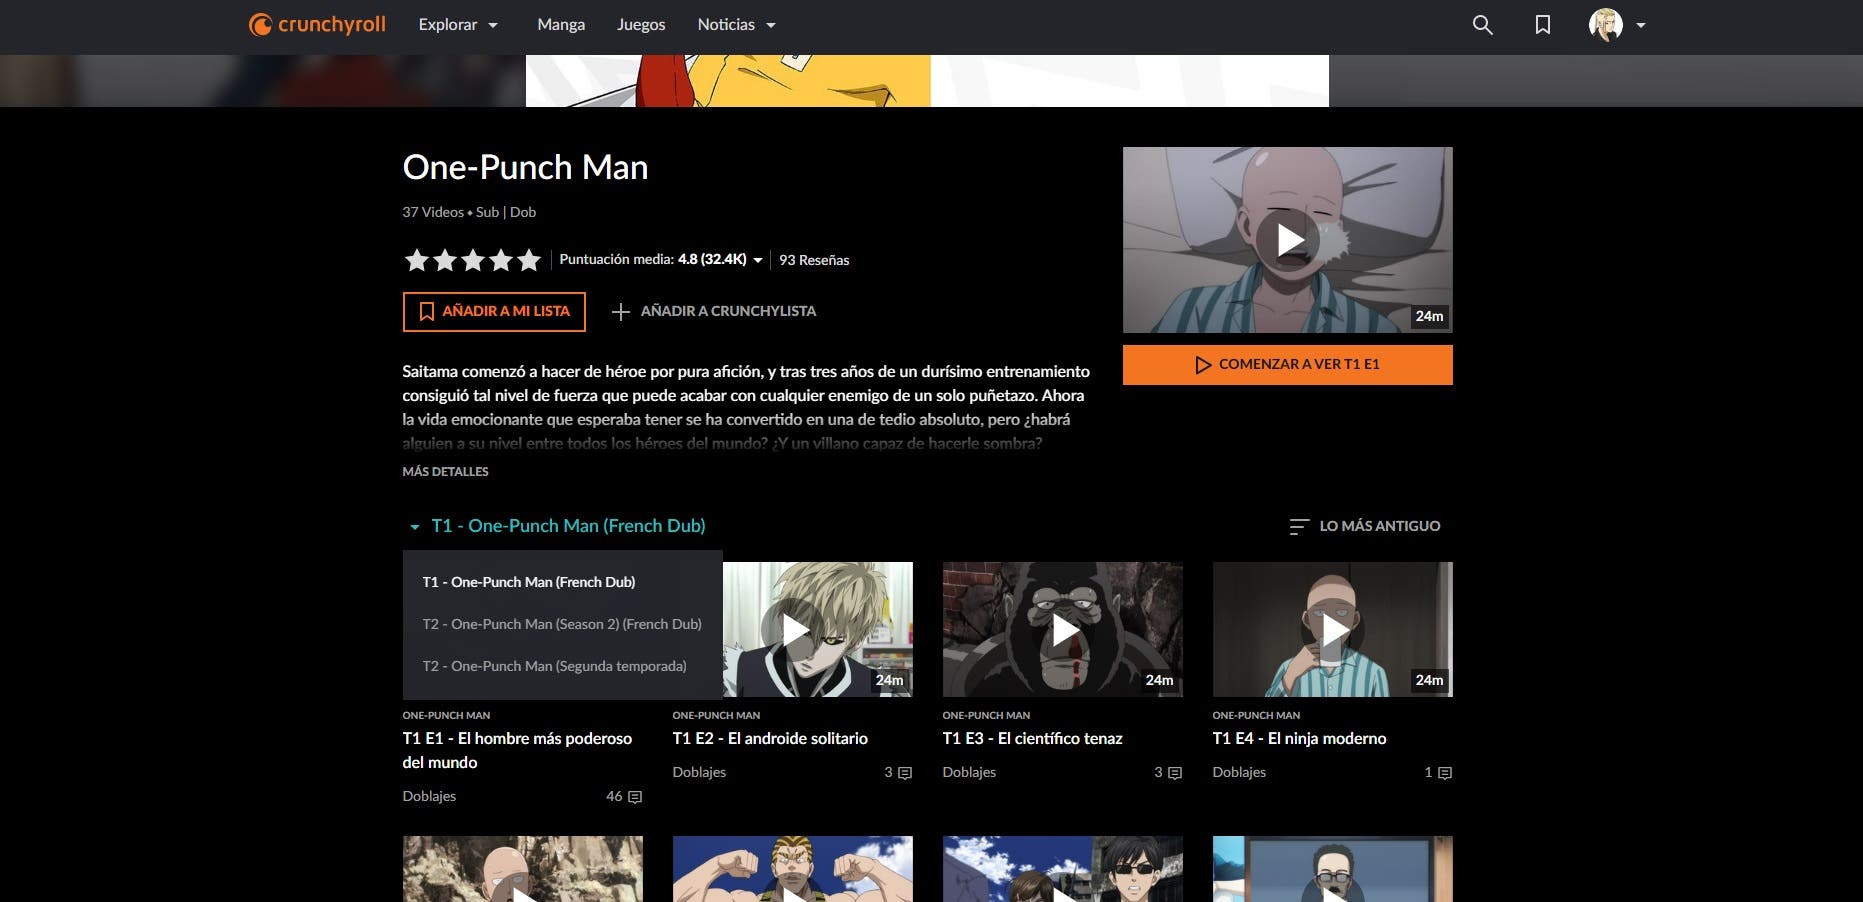 Crunchyroll.la - La primera temporada de One Punch Man ahora está